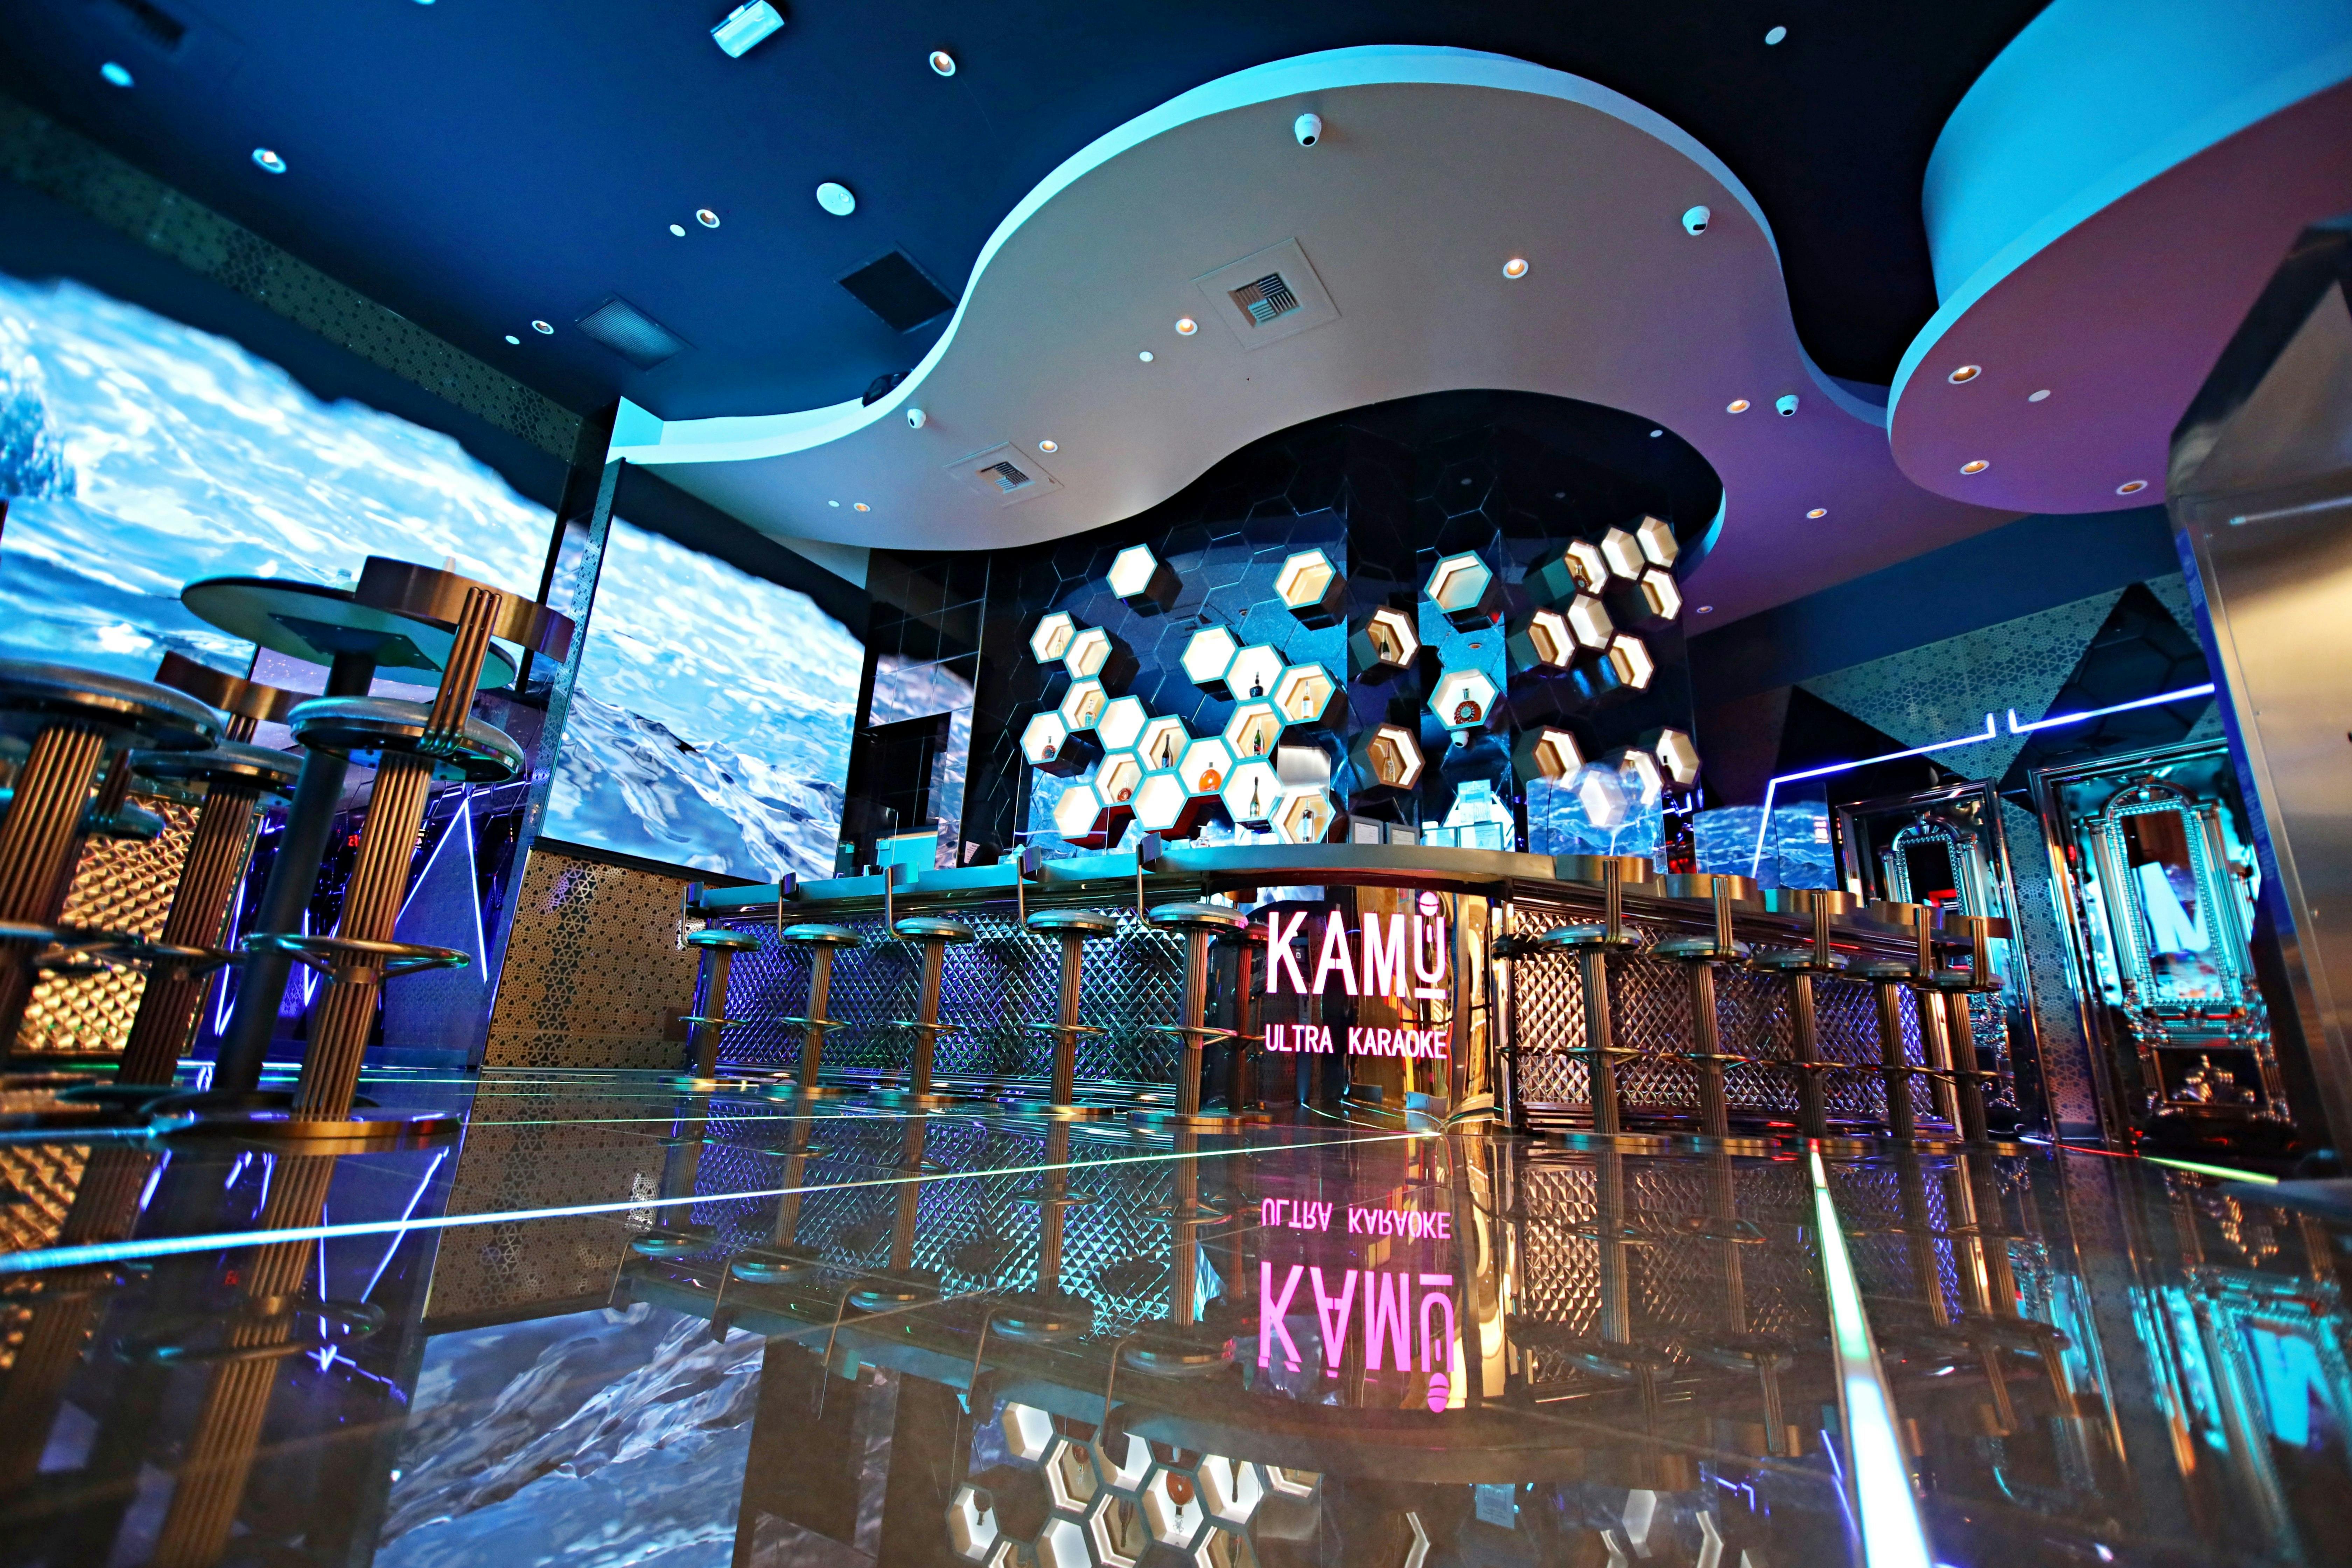 Kaartjes voor KAMU Ultra Karaoke in Las Vegas